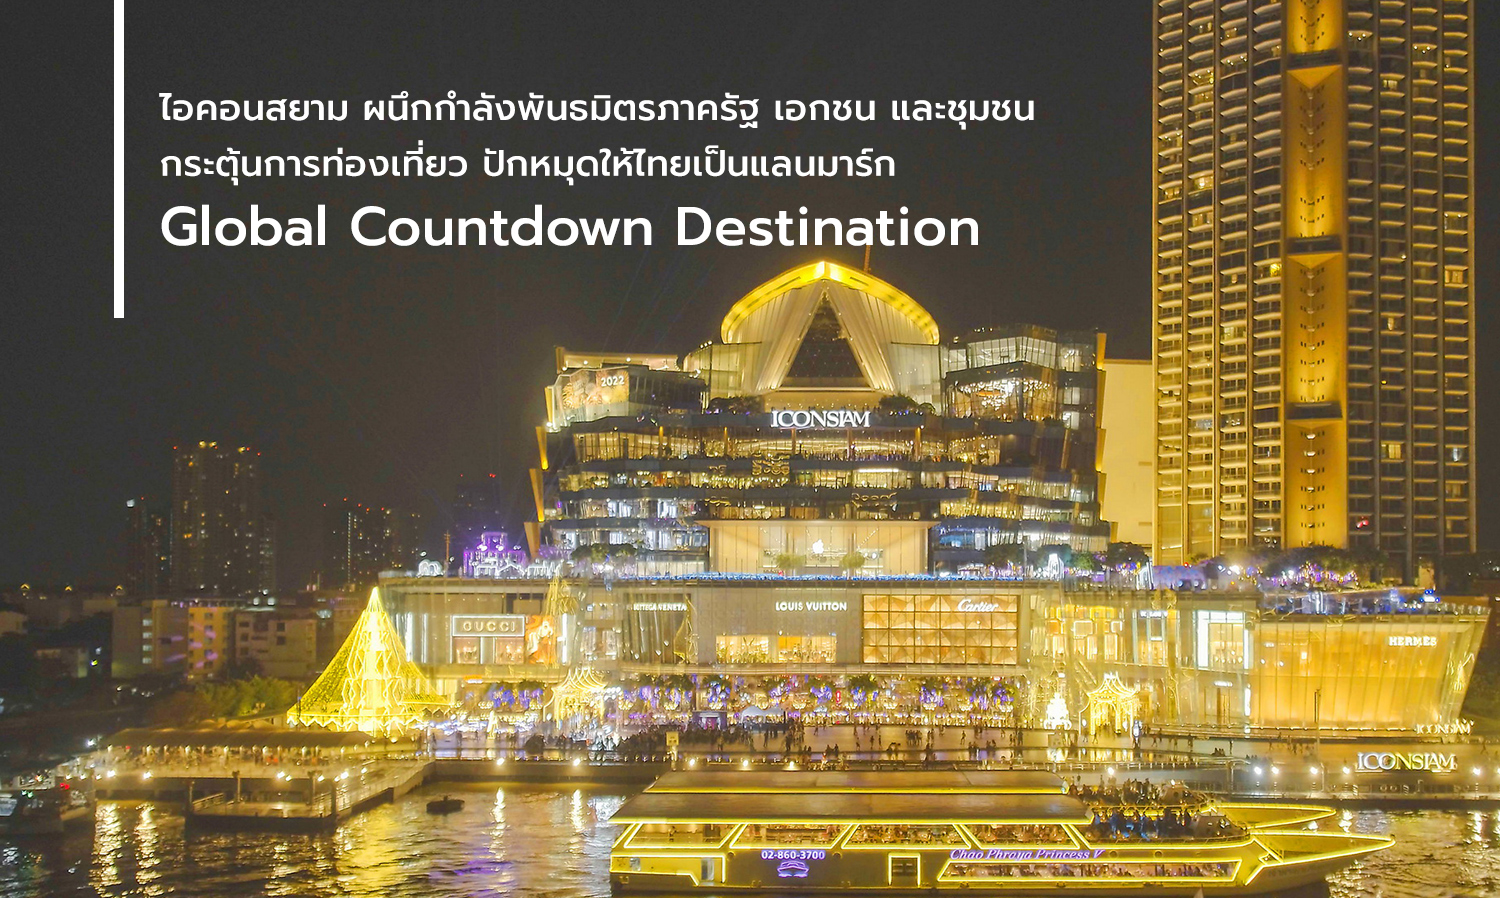 ไอคอนสยาม ผนึกกำลังพันธมิตรภาครัฐ เอกชน และชุมชน กระตุ้นการท่องเที่ยว ปักหมุดให้ไทยเป็นแลนมาร์ก Global Countdown Destination